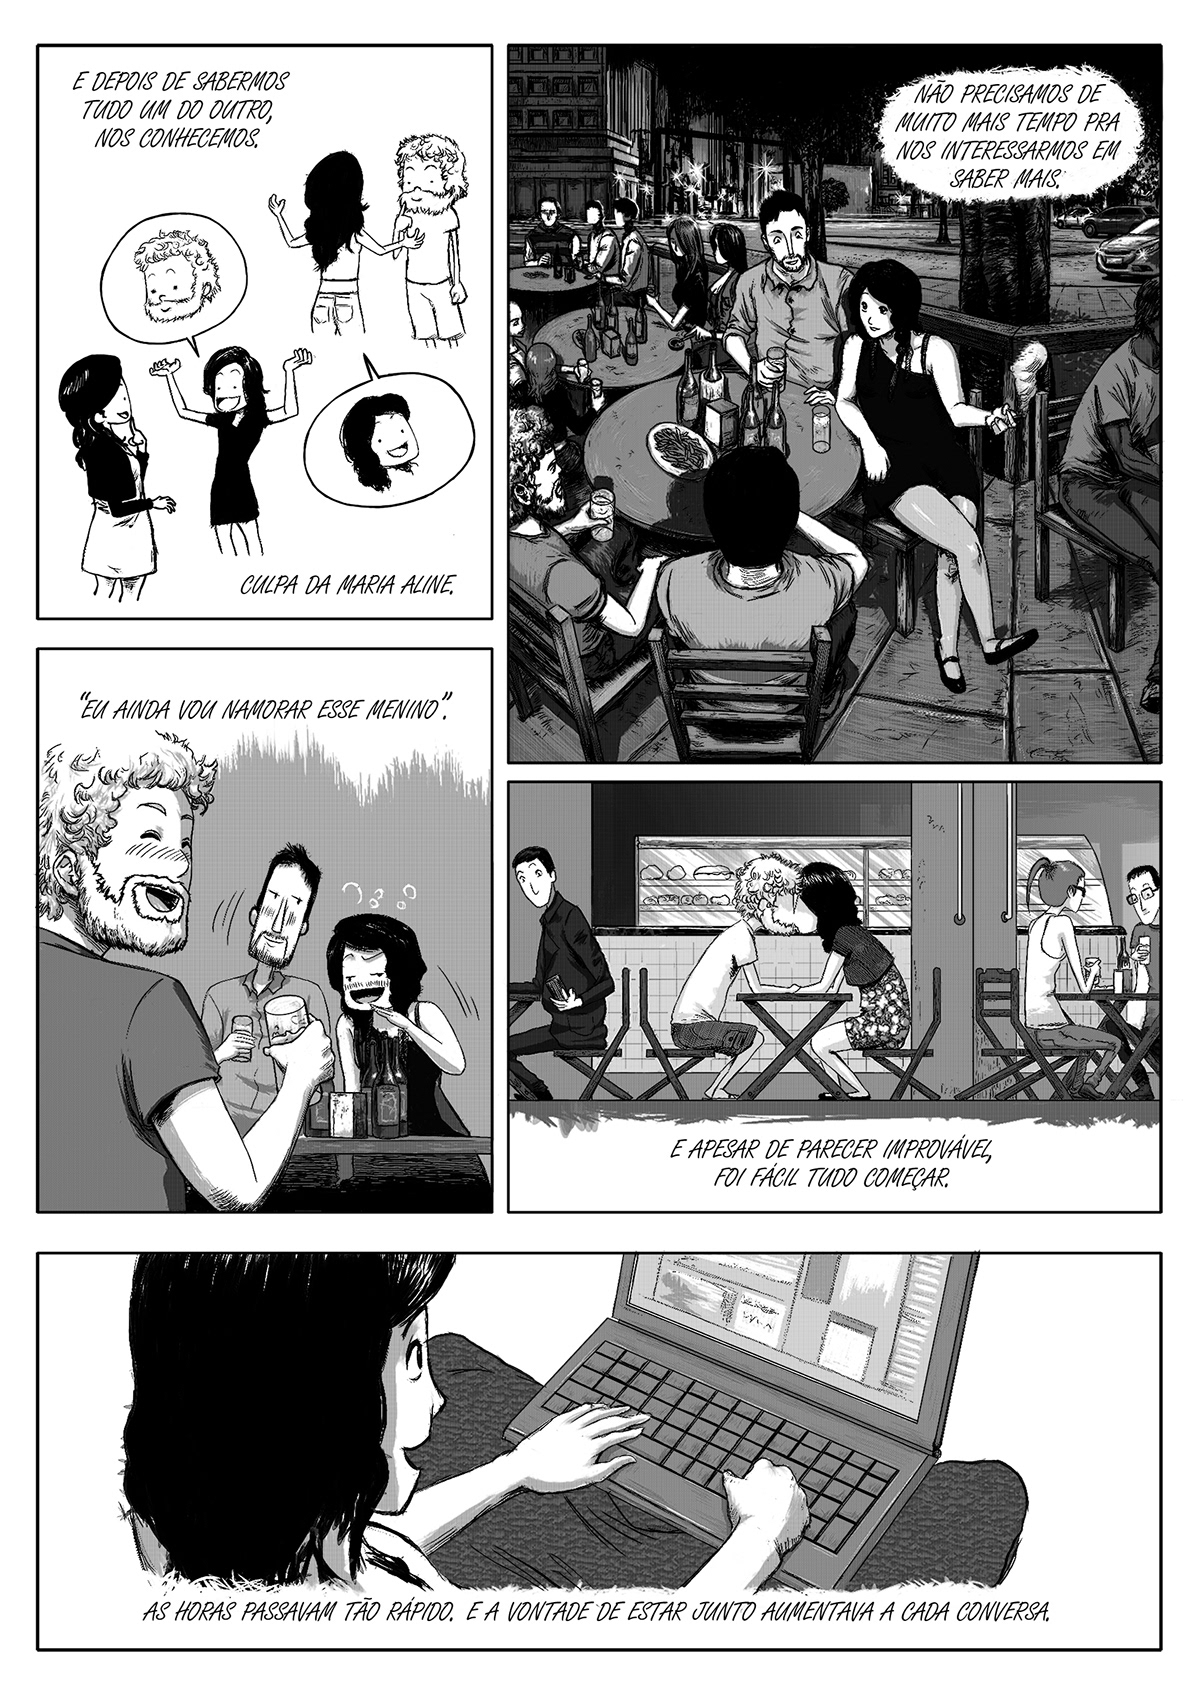 comics quadrinhos historia em branco black White Capa colorida manga shoujo Alexandre chaudret wacom gallery Steven Murray The Lunch Date